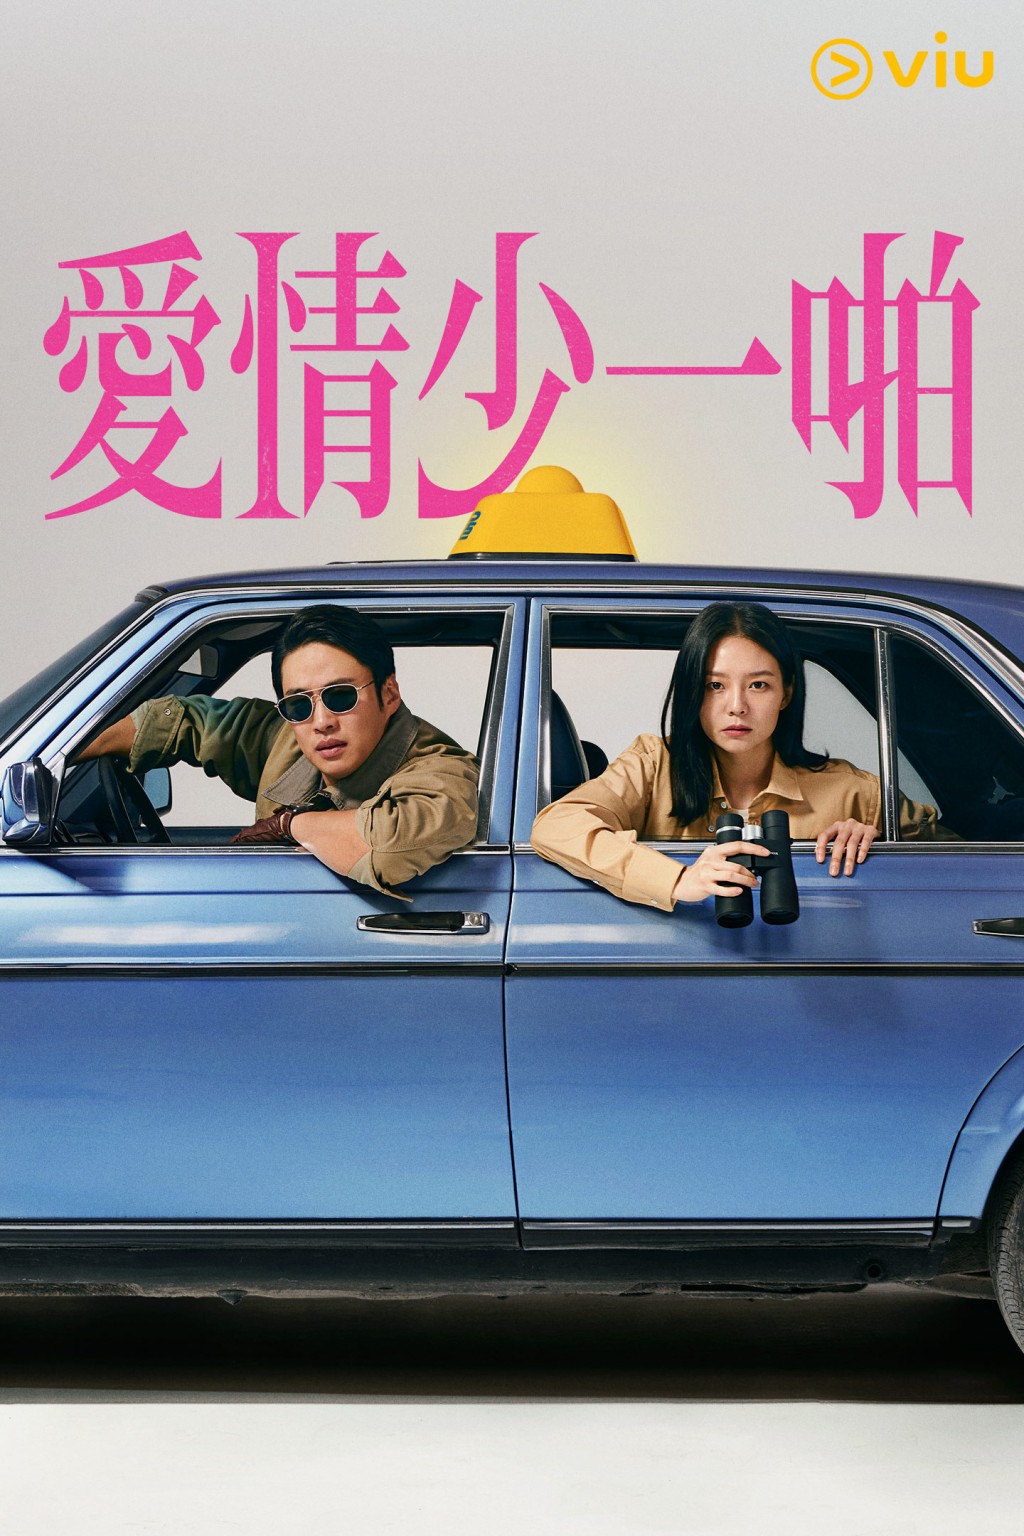 《爱情少一啪》将于1月20日在“黄Viu煲剧平台”上架。